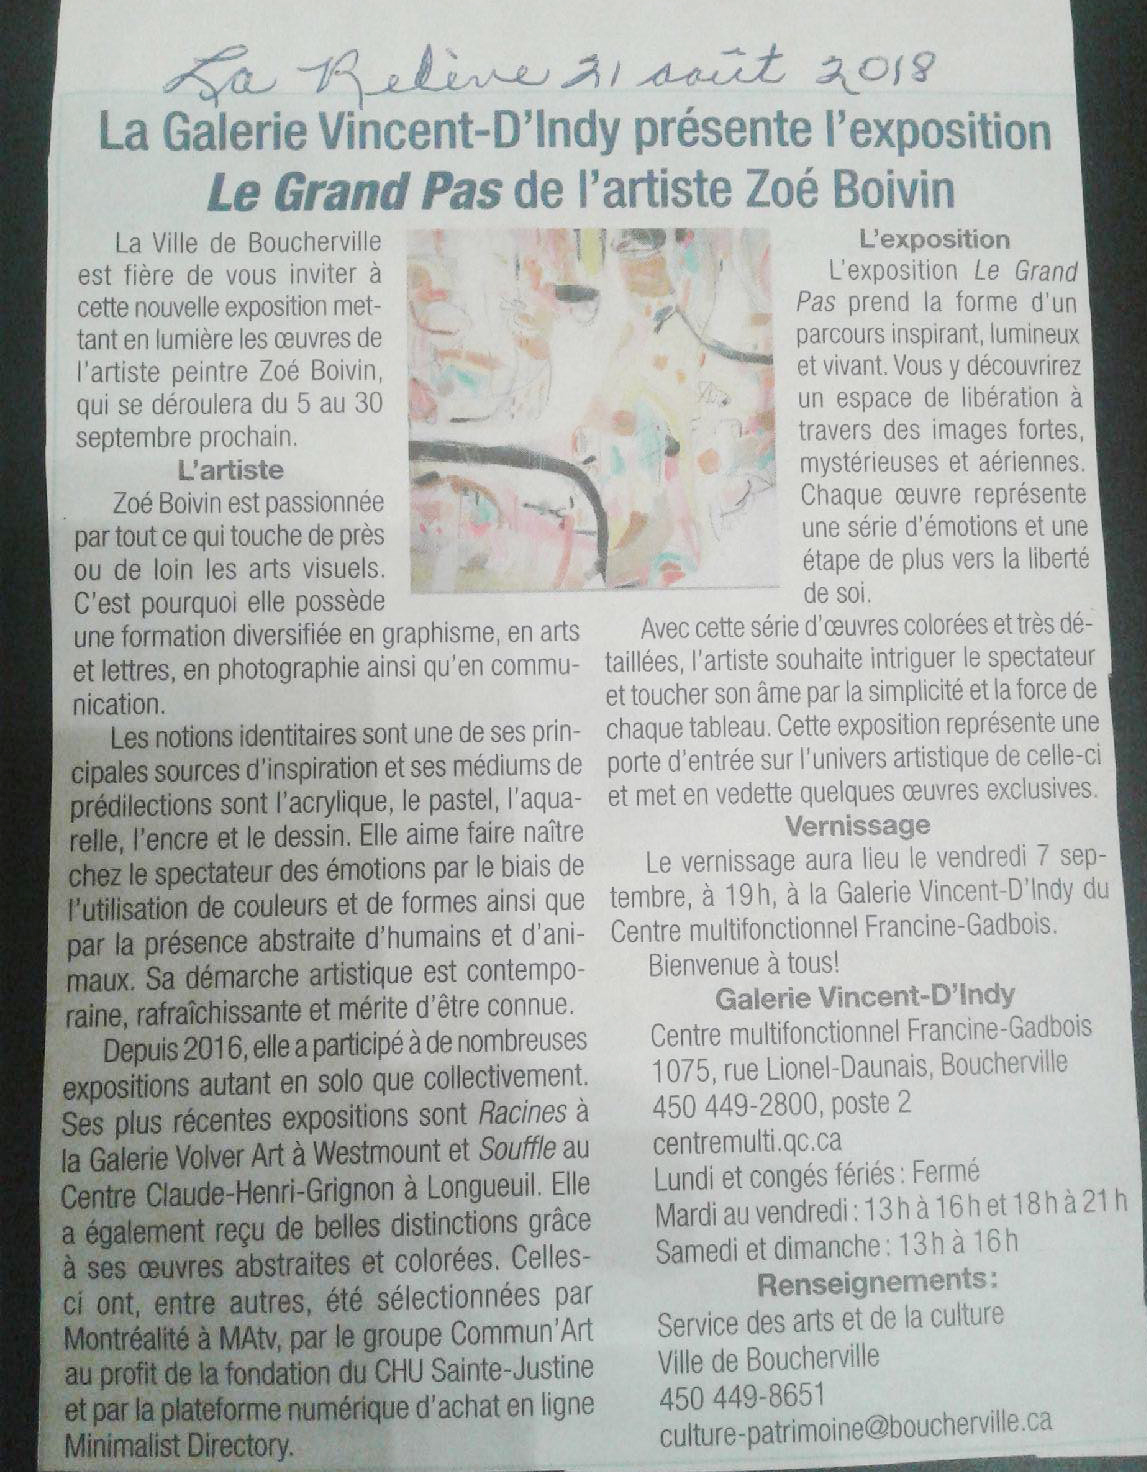  La Galerie Vincent D’Indy présente l’exposition Le Grand Pas de l’artiste Zoé Boivin.  La Relève , 21 août 2018. 